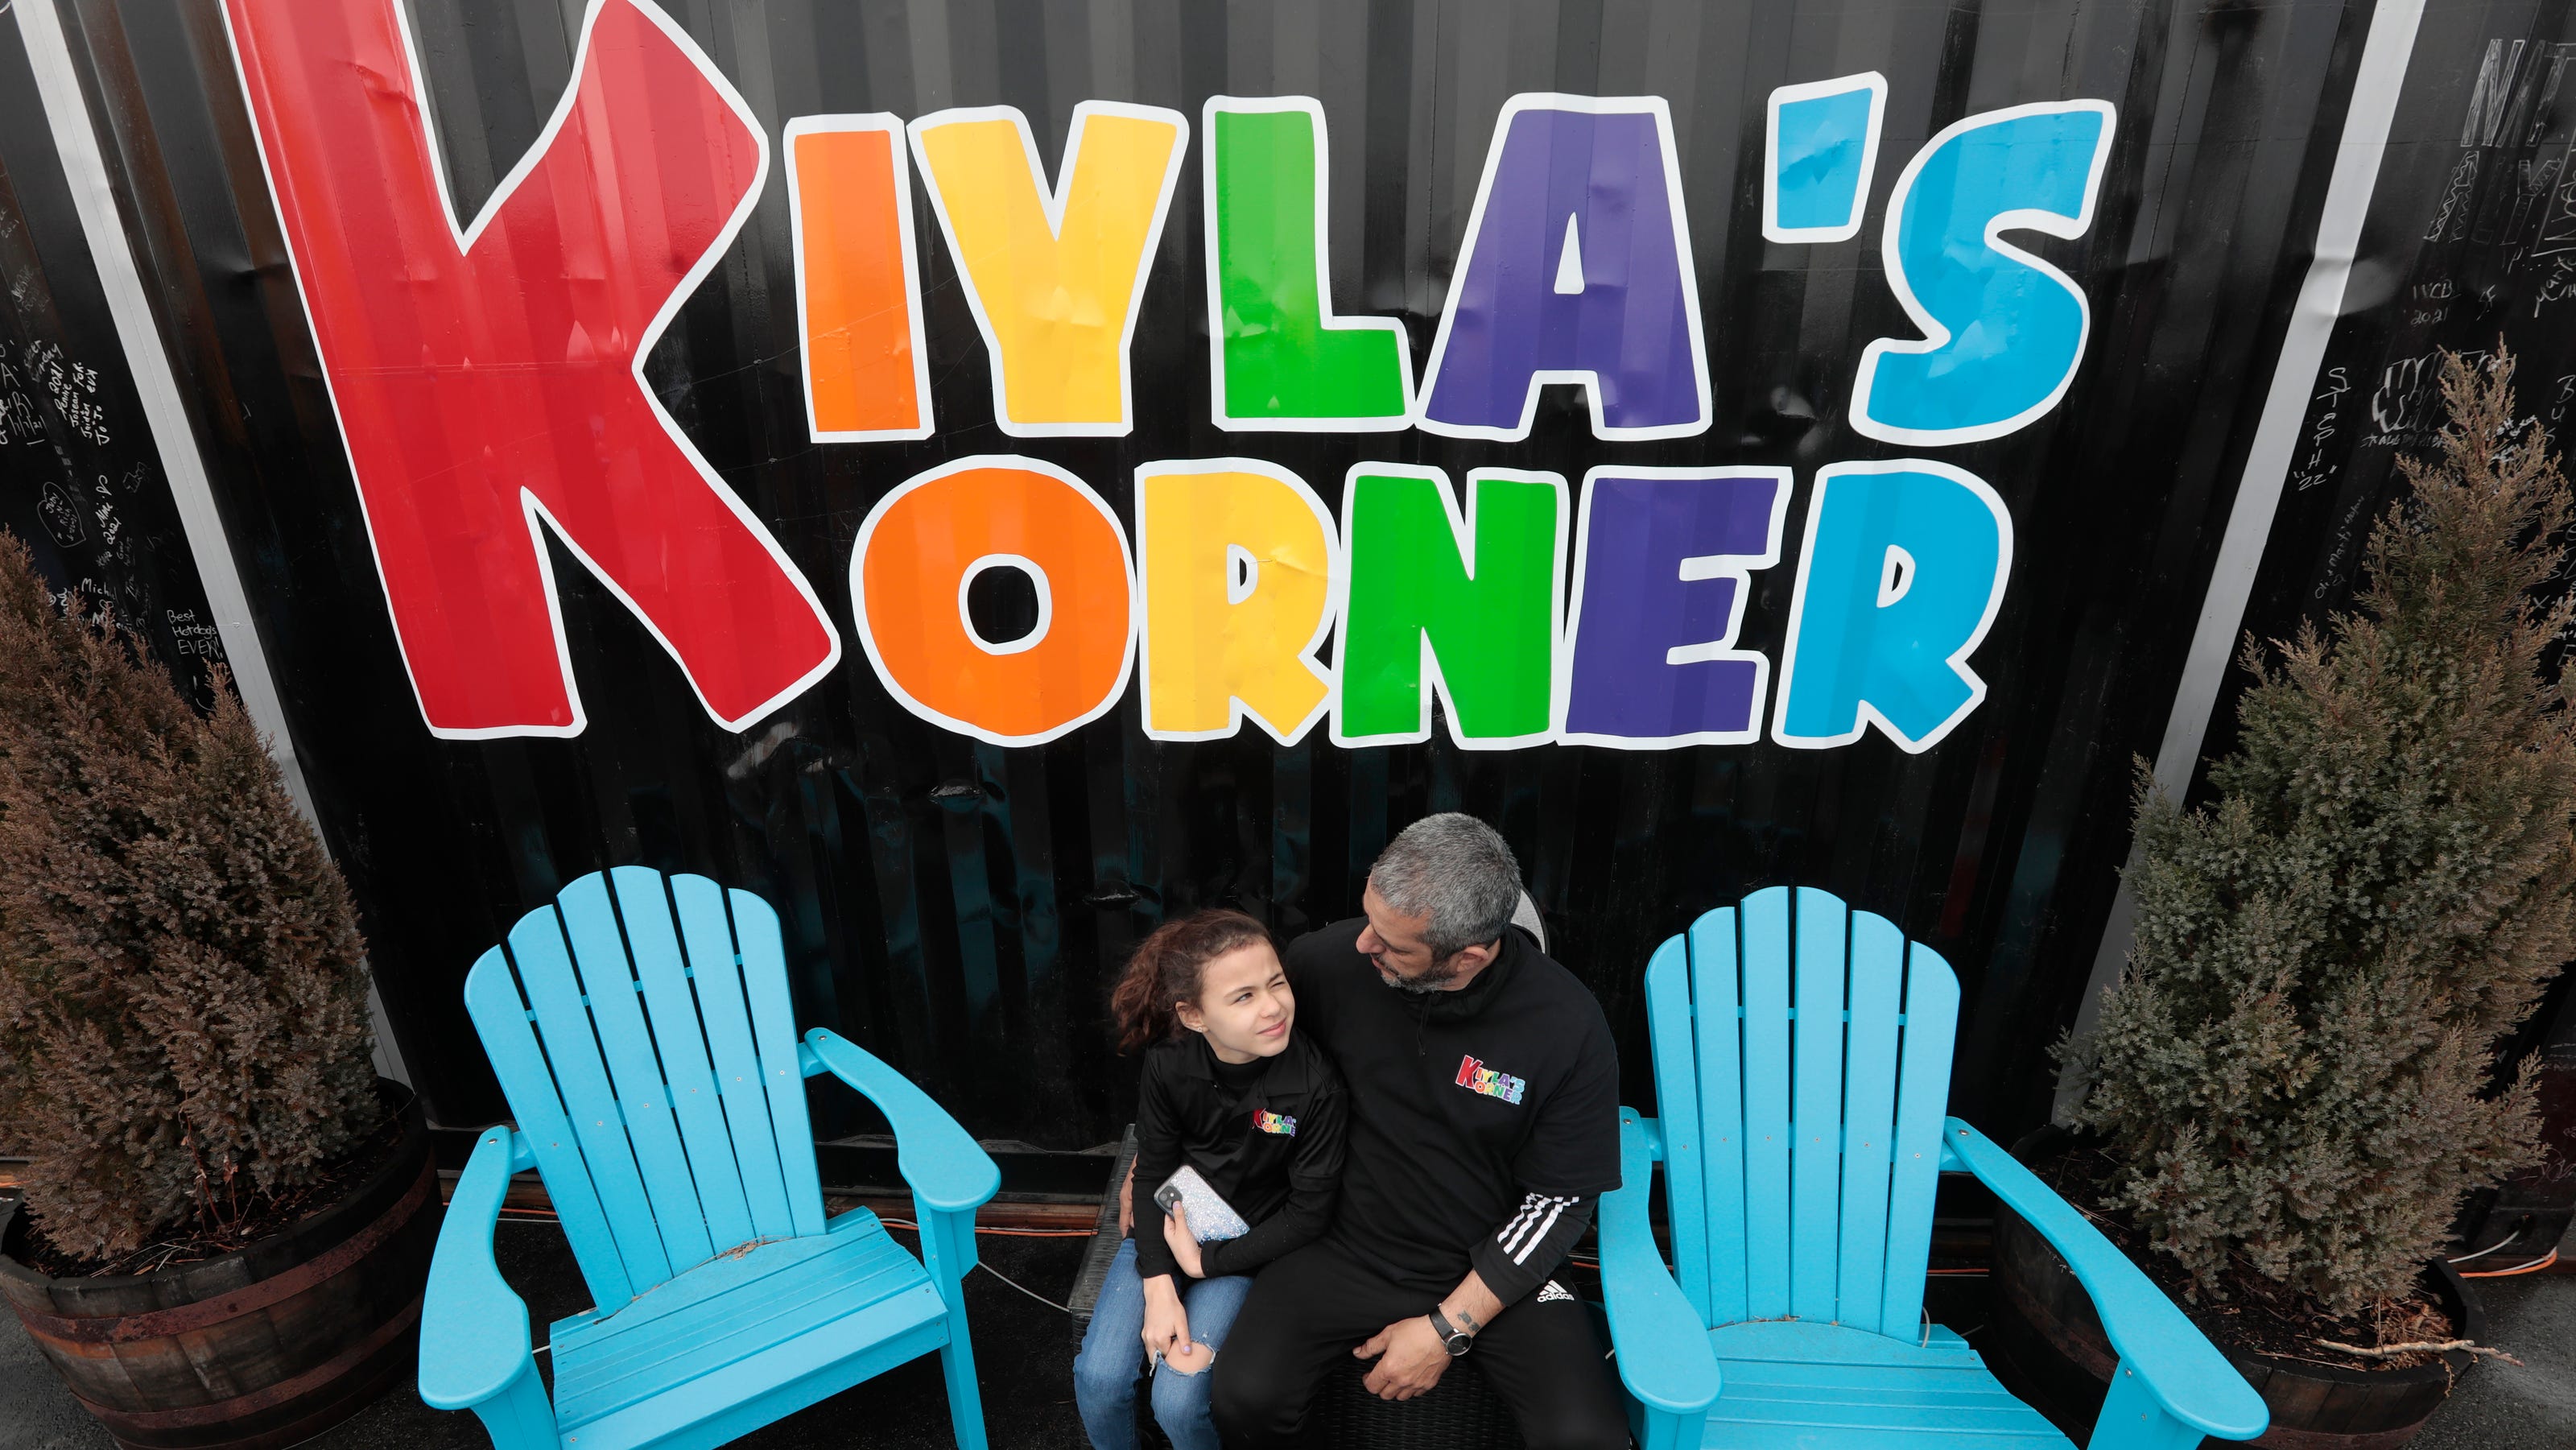 New Bedford food truck park, Kiyla's Korner offers unique hot dogs